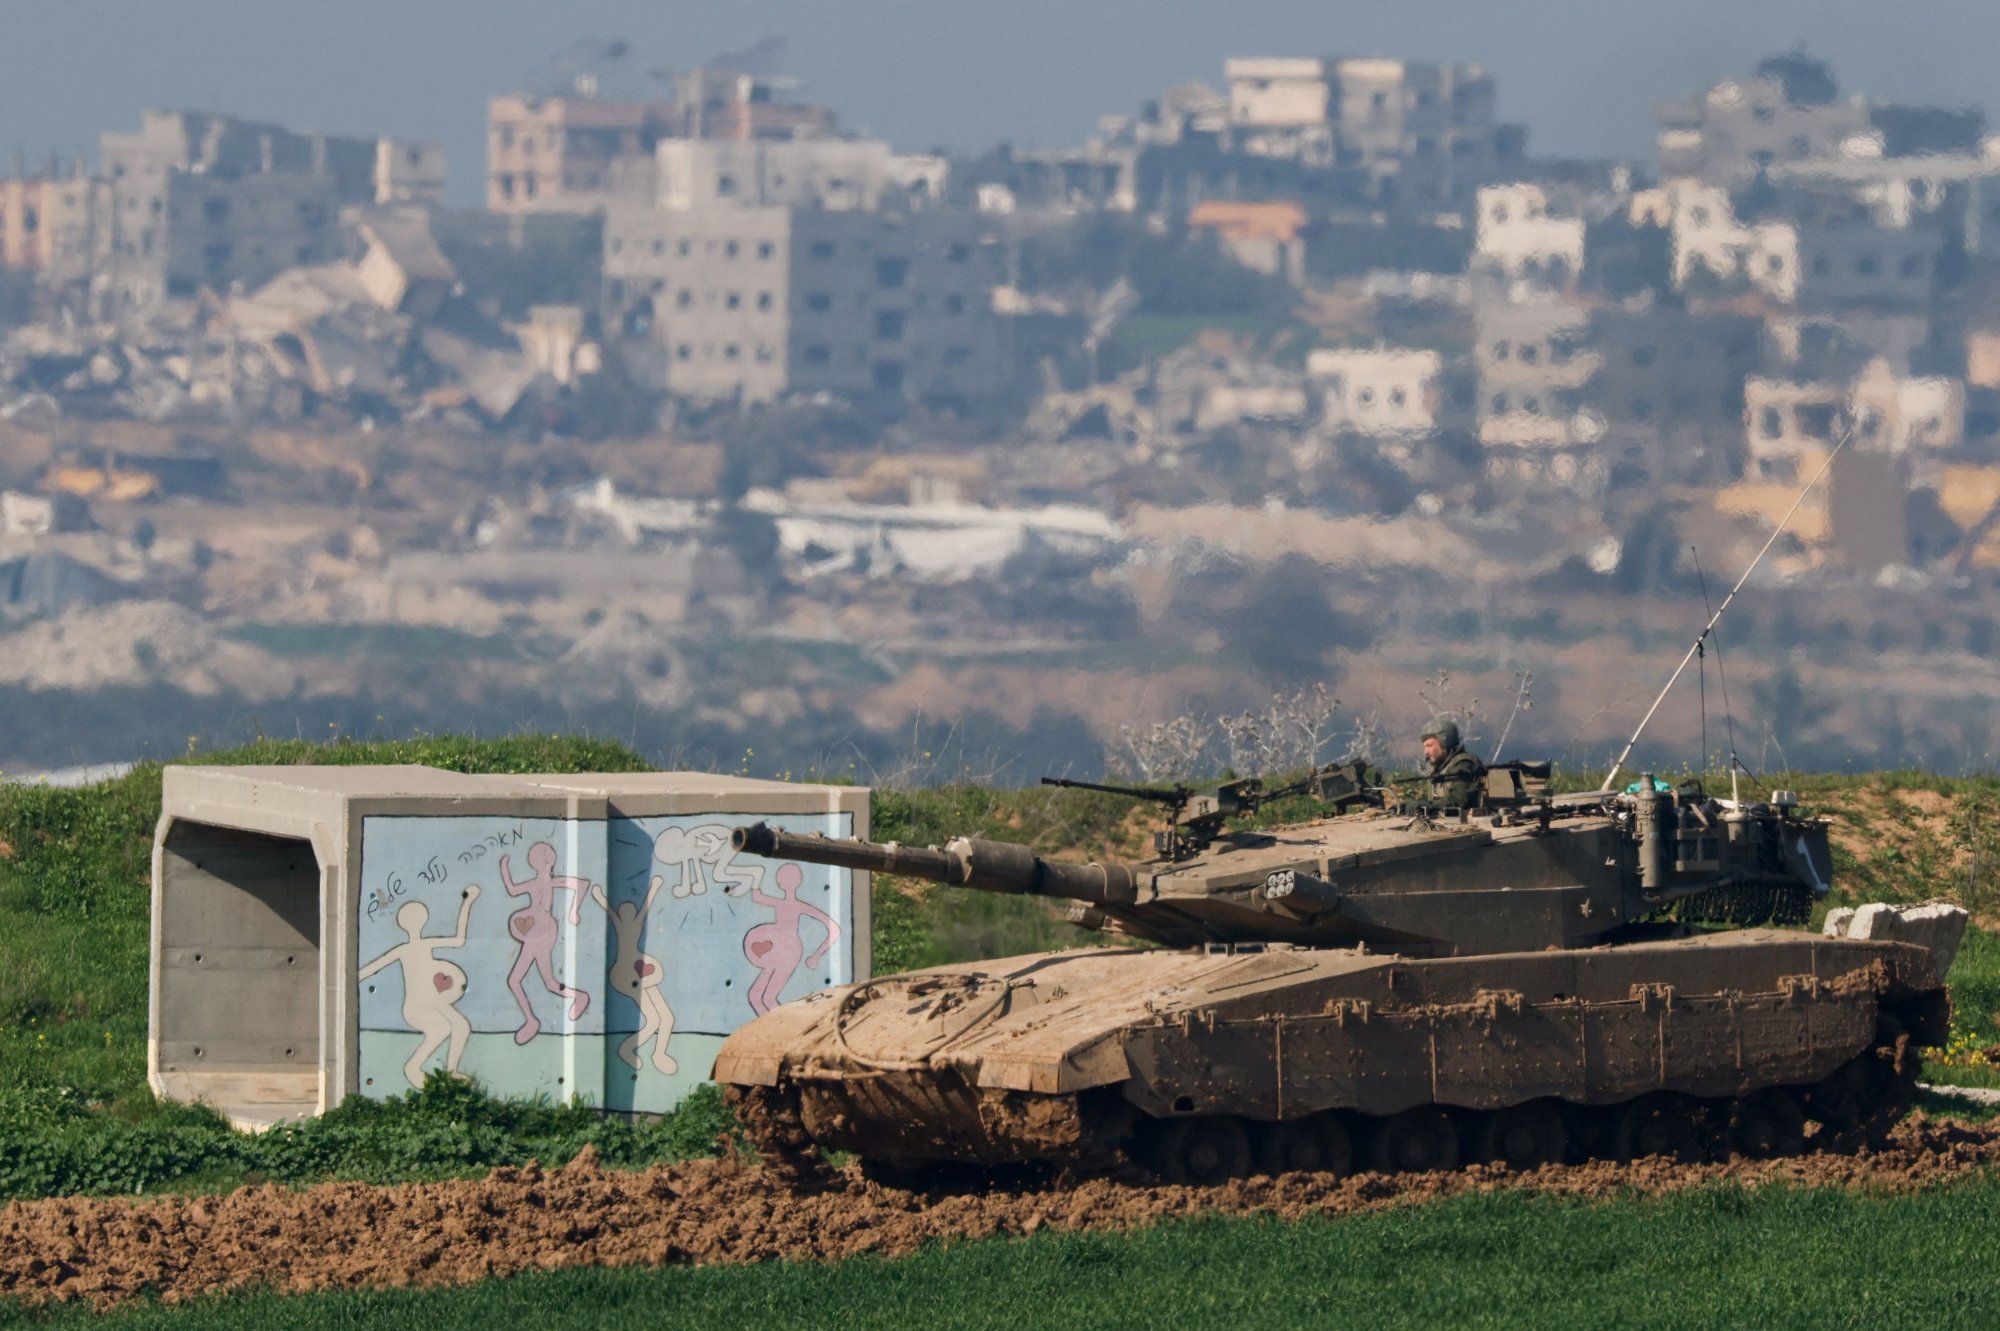 Χαμάς: Το Ισραήλ εξετάζει την πρόταση της για συμφωνία - Αναμένεται η τοποθέτηση Νετανιάχου